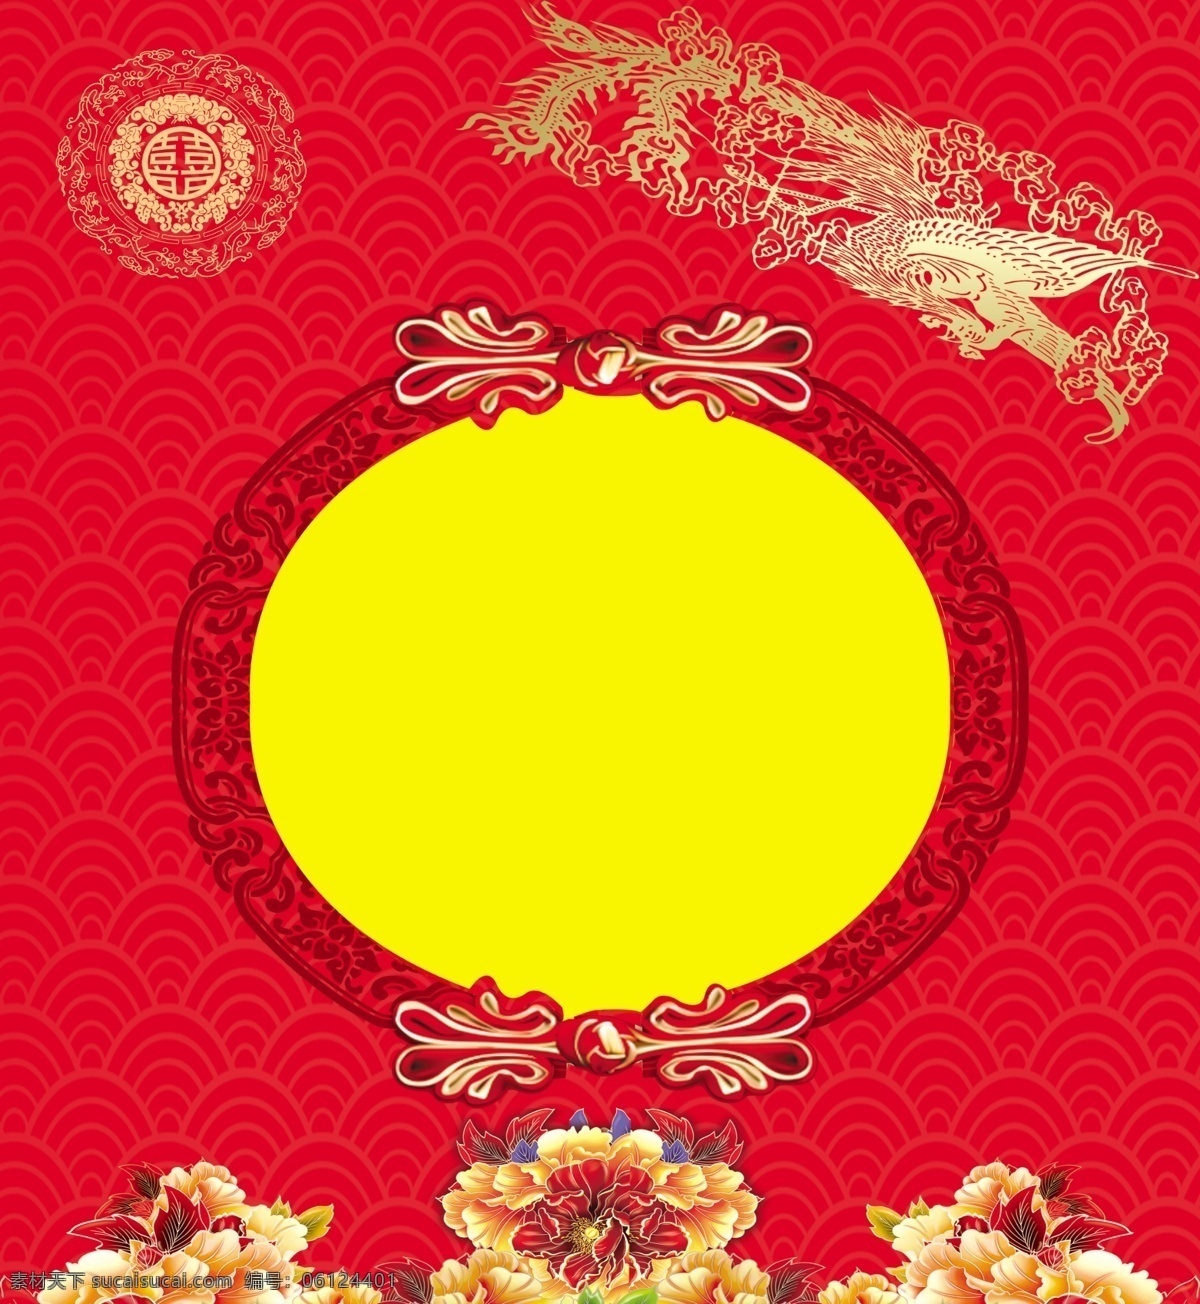 中式婚礼背景 红色背景图片 红色背景 双喜 龙凤图片 婚礼背景 大红婚礼背景 鱼尾纹